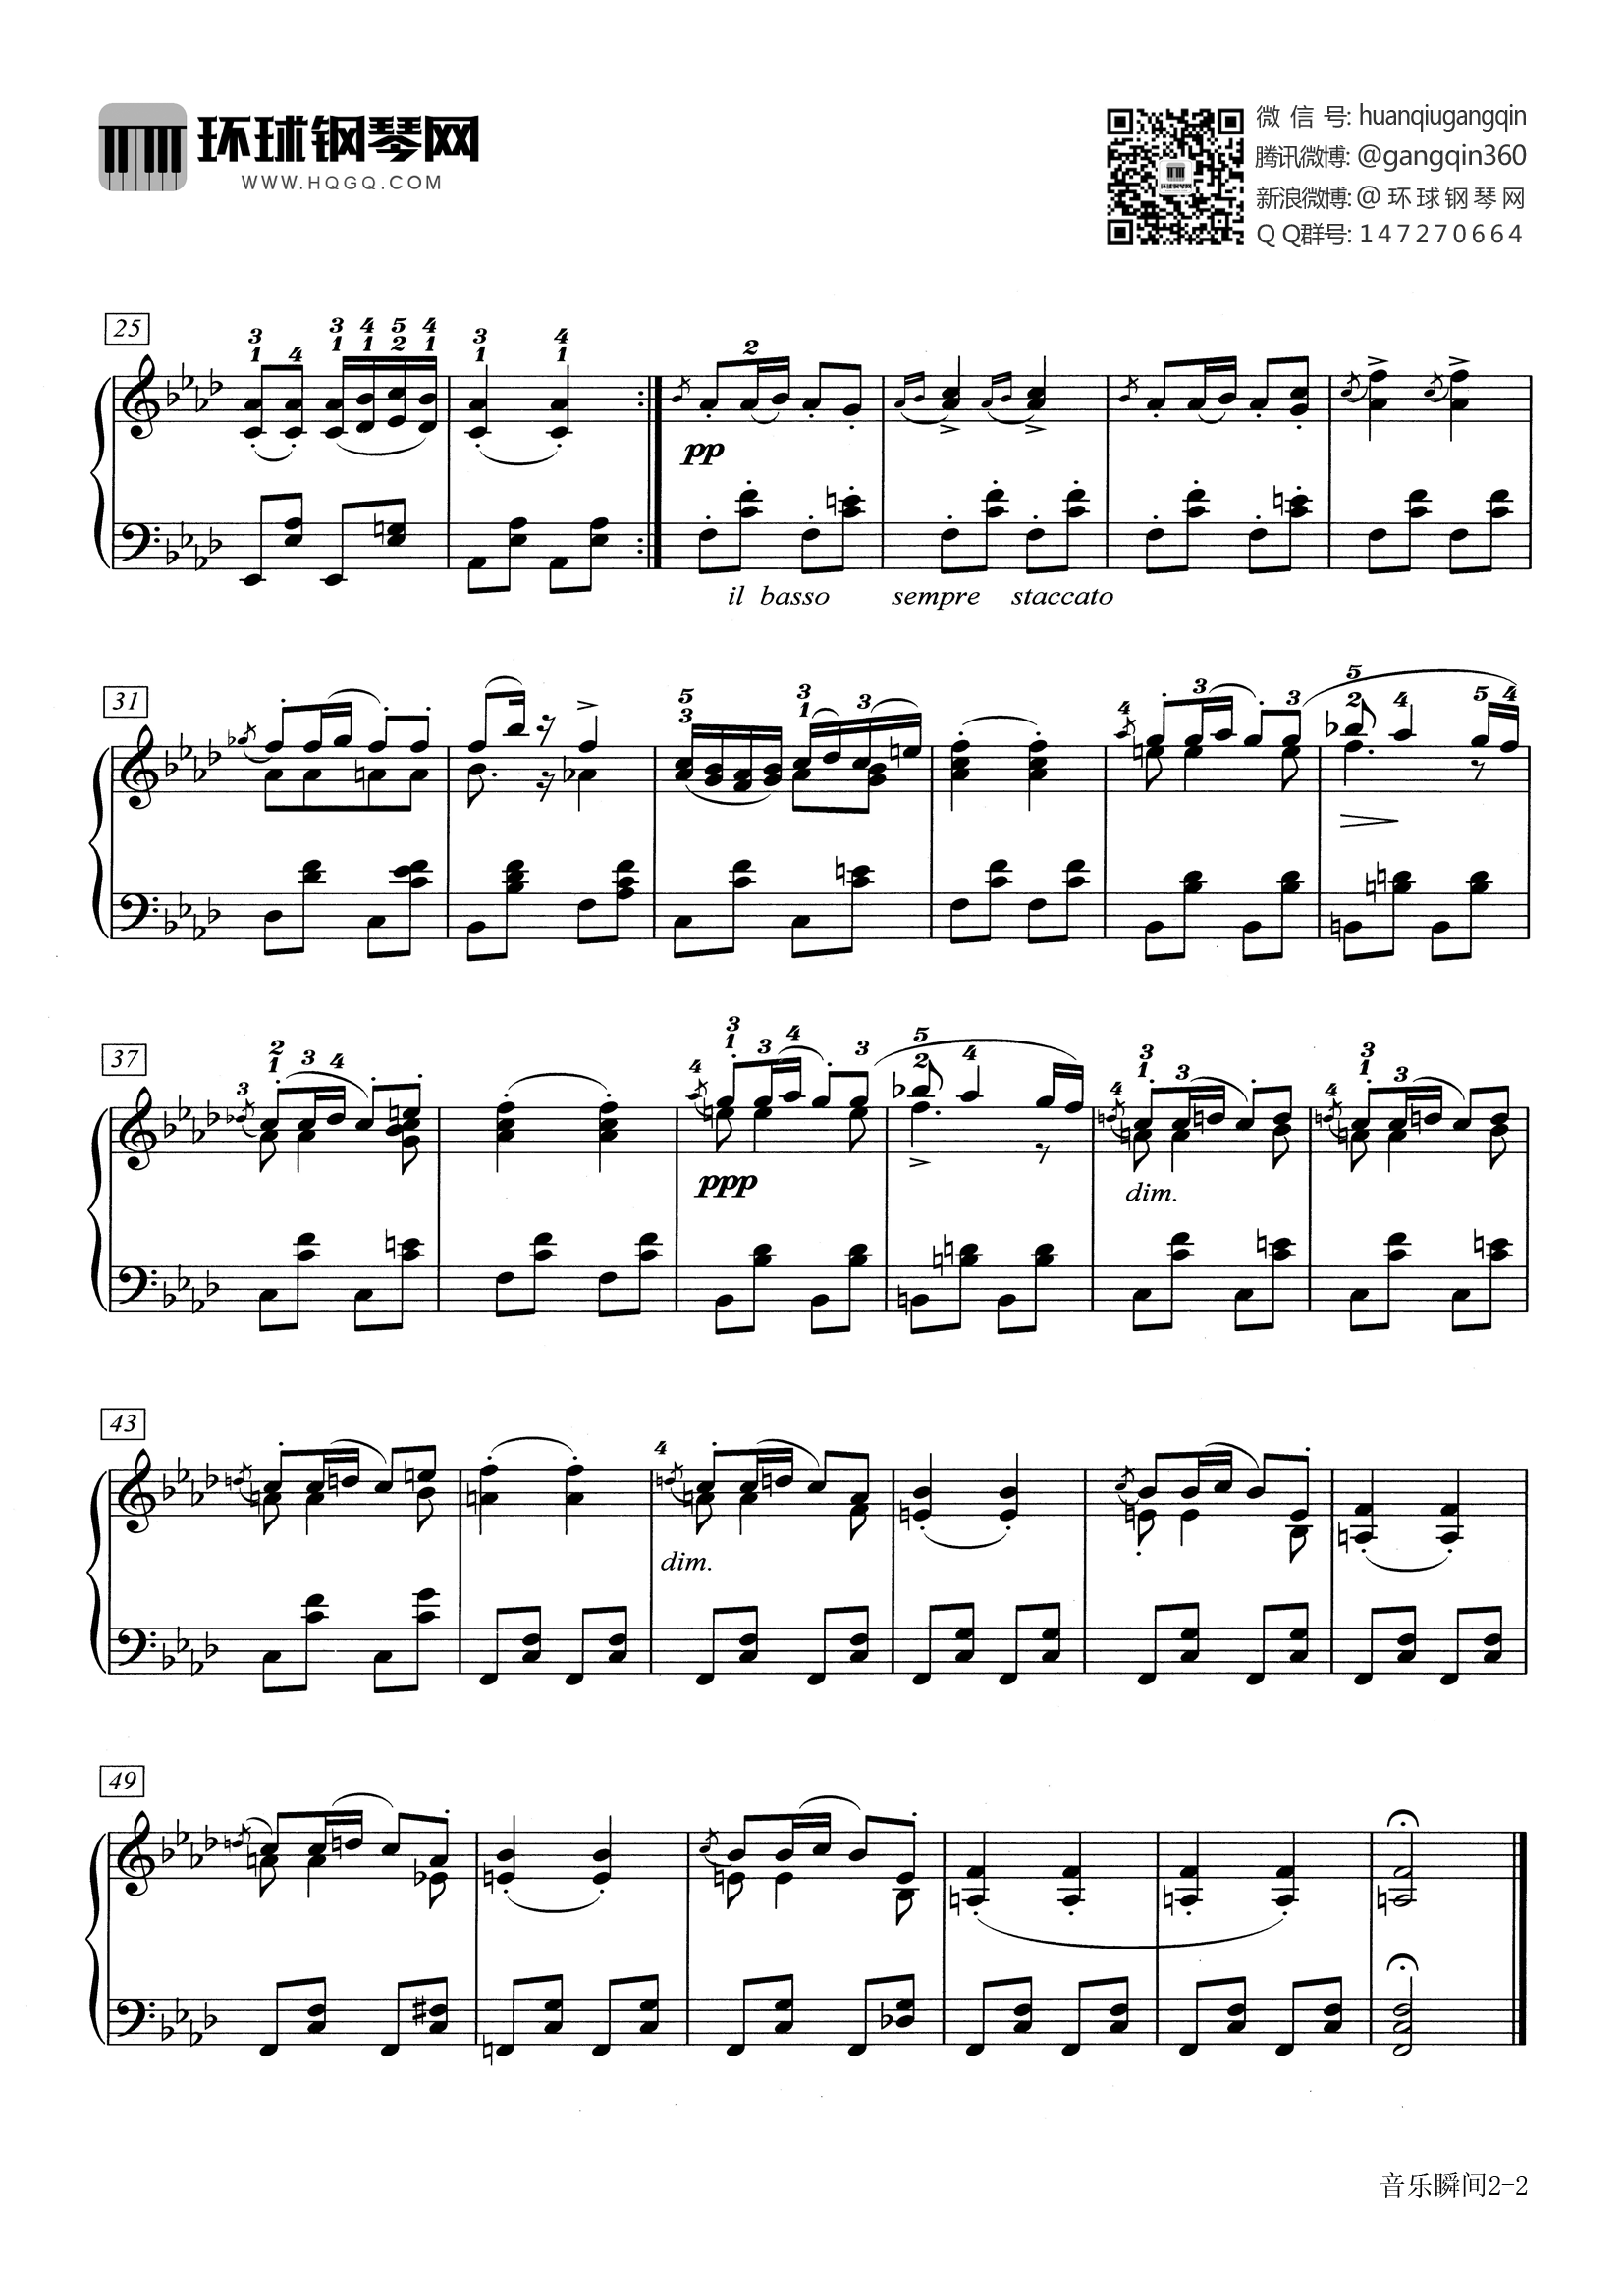 音乐瞬间(d.780 no.3)-舒伯特-古典_钢琴谱 - 钢琴谱